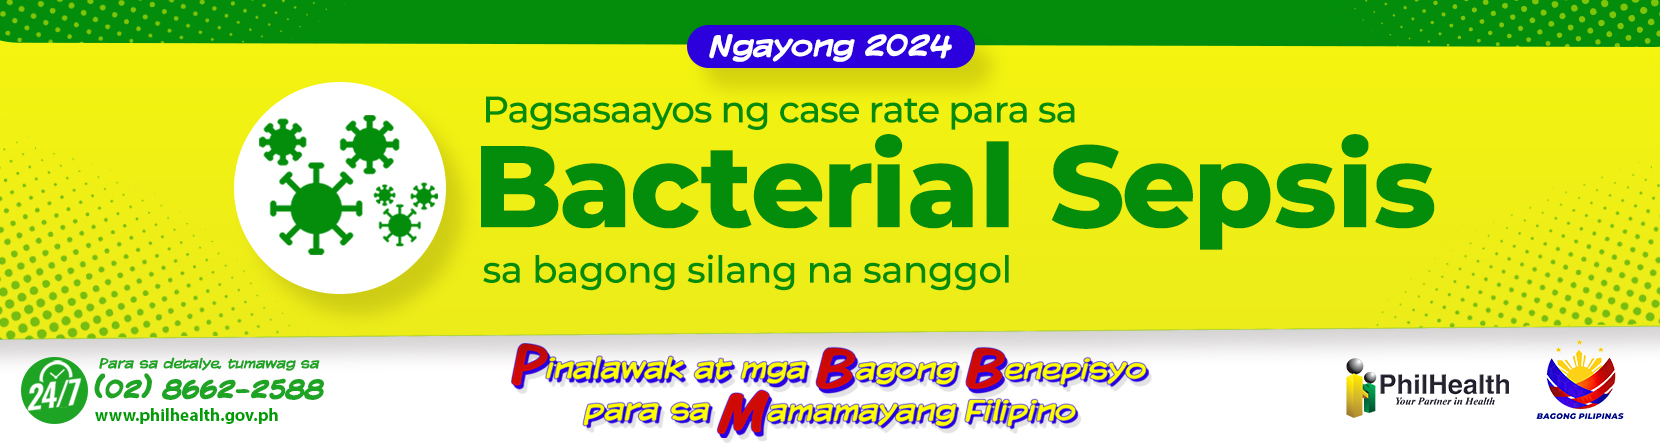 Ngayong 2024 - Bacterial Sepsis